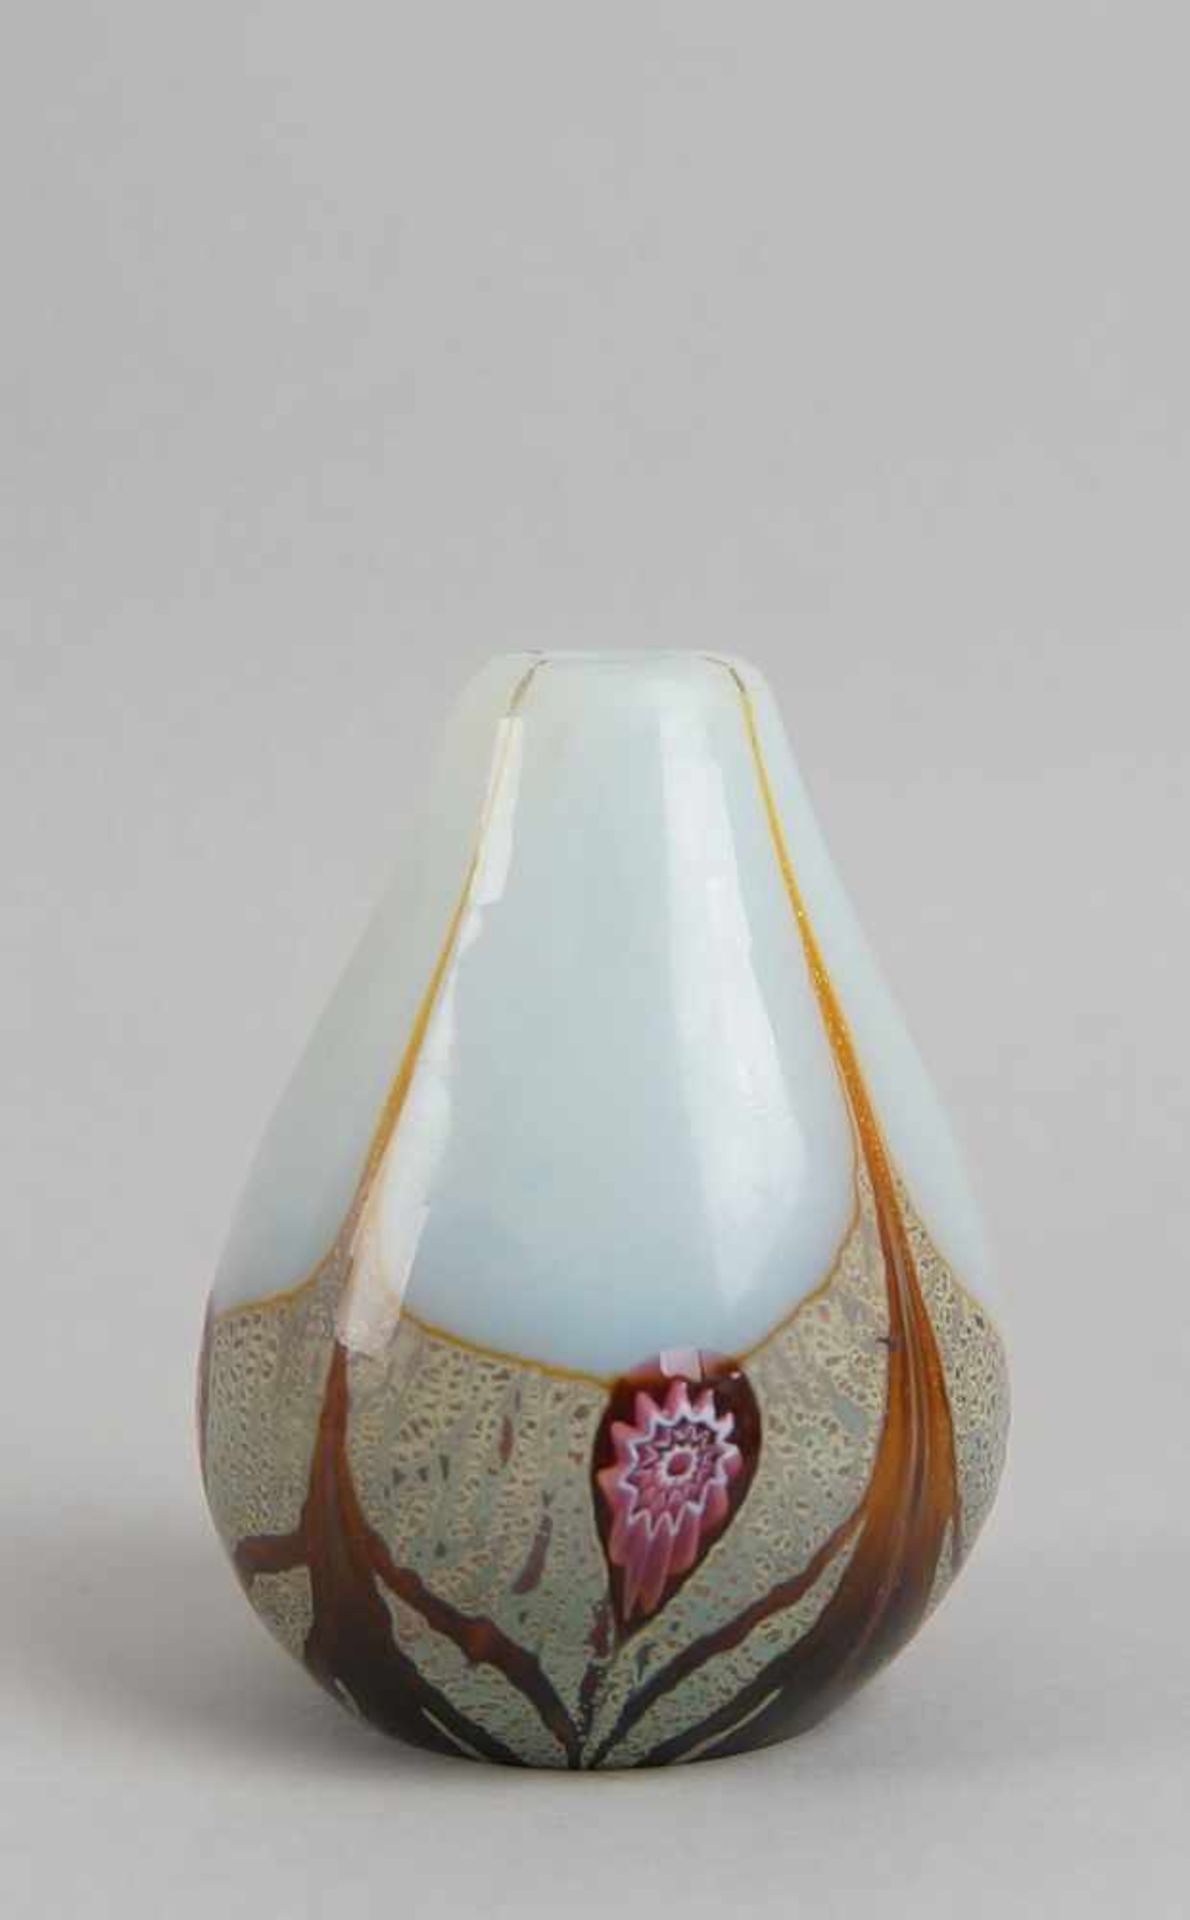 Zarte Jugendstil Glas-Vase mit Mille Fiori - Dekor, H 10cm - Bild 3 aus 5